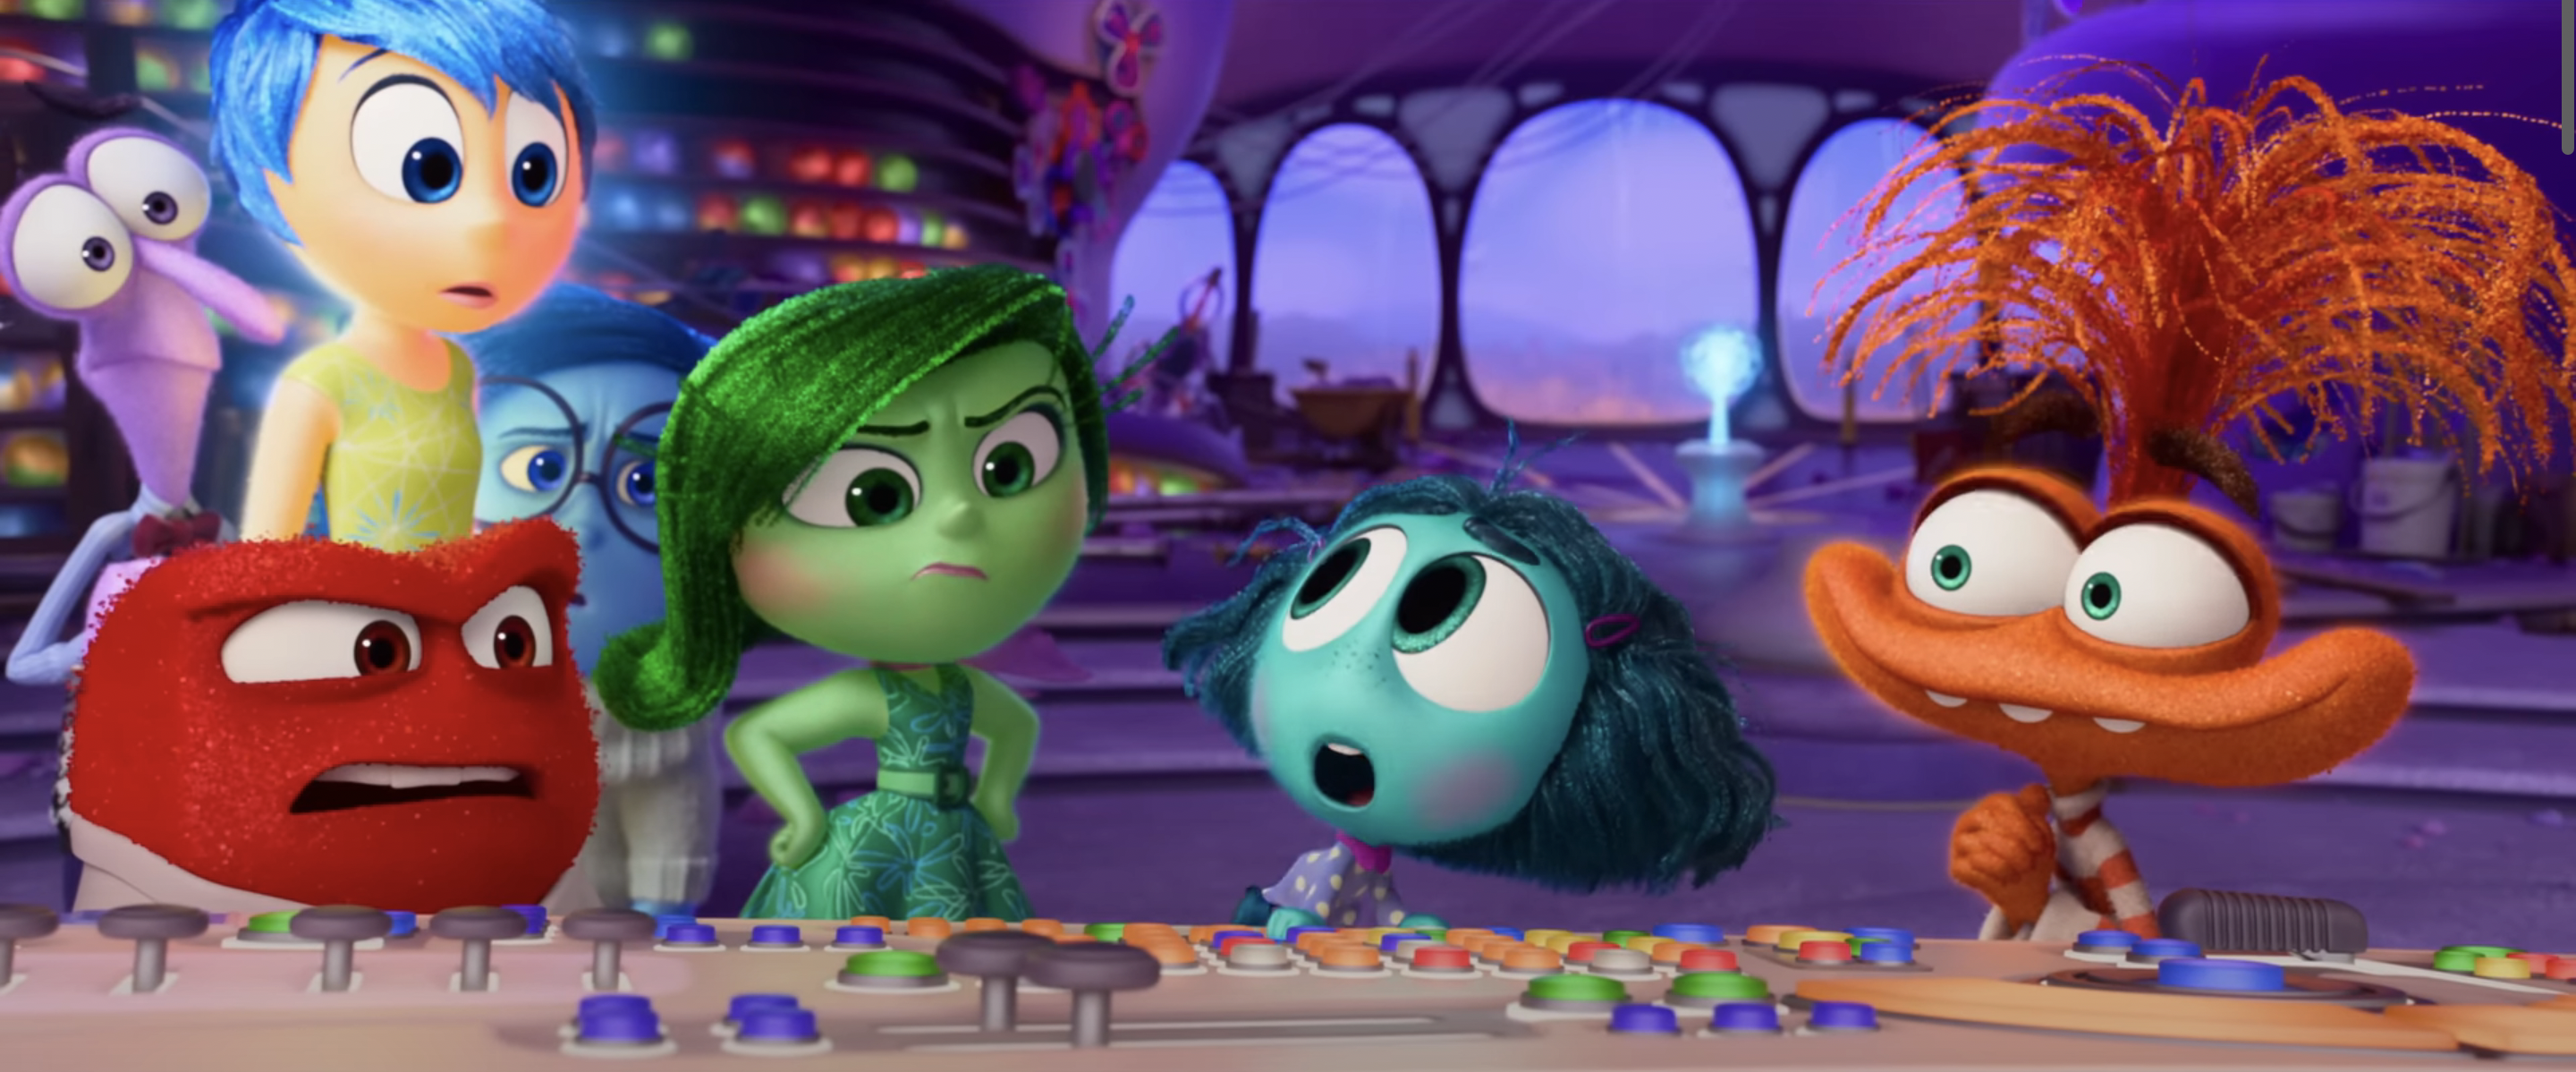 Сэм Томпсон подтверждает неожиданную новую роль в Pixar